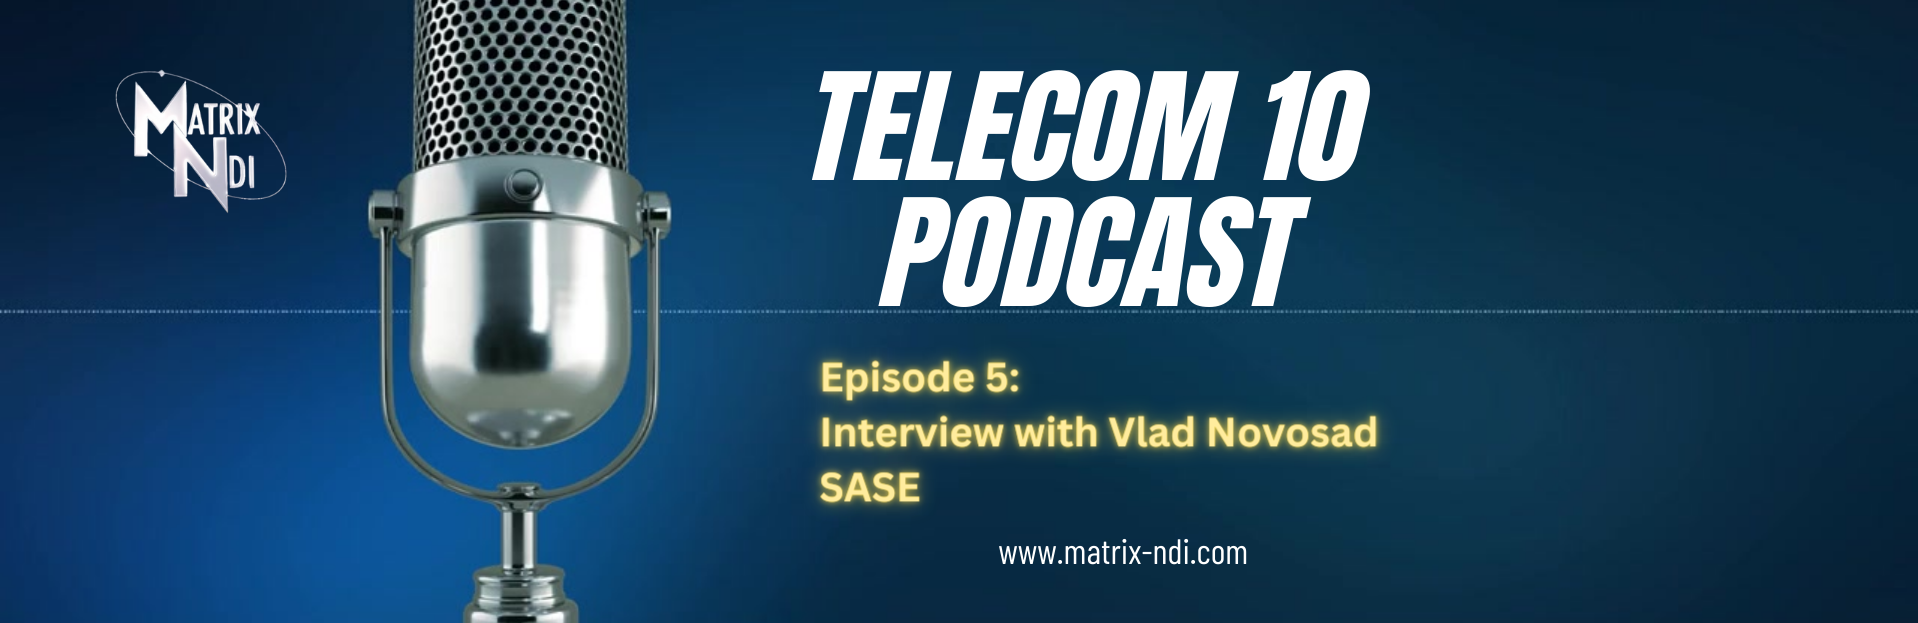 Matrix-NDI Telecom 10 Podcast 5: SASE